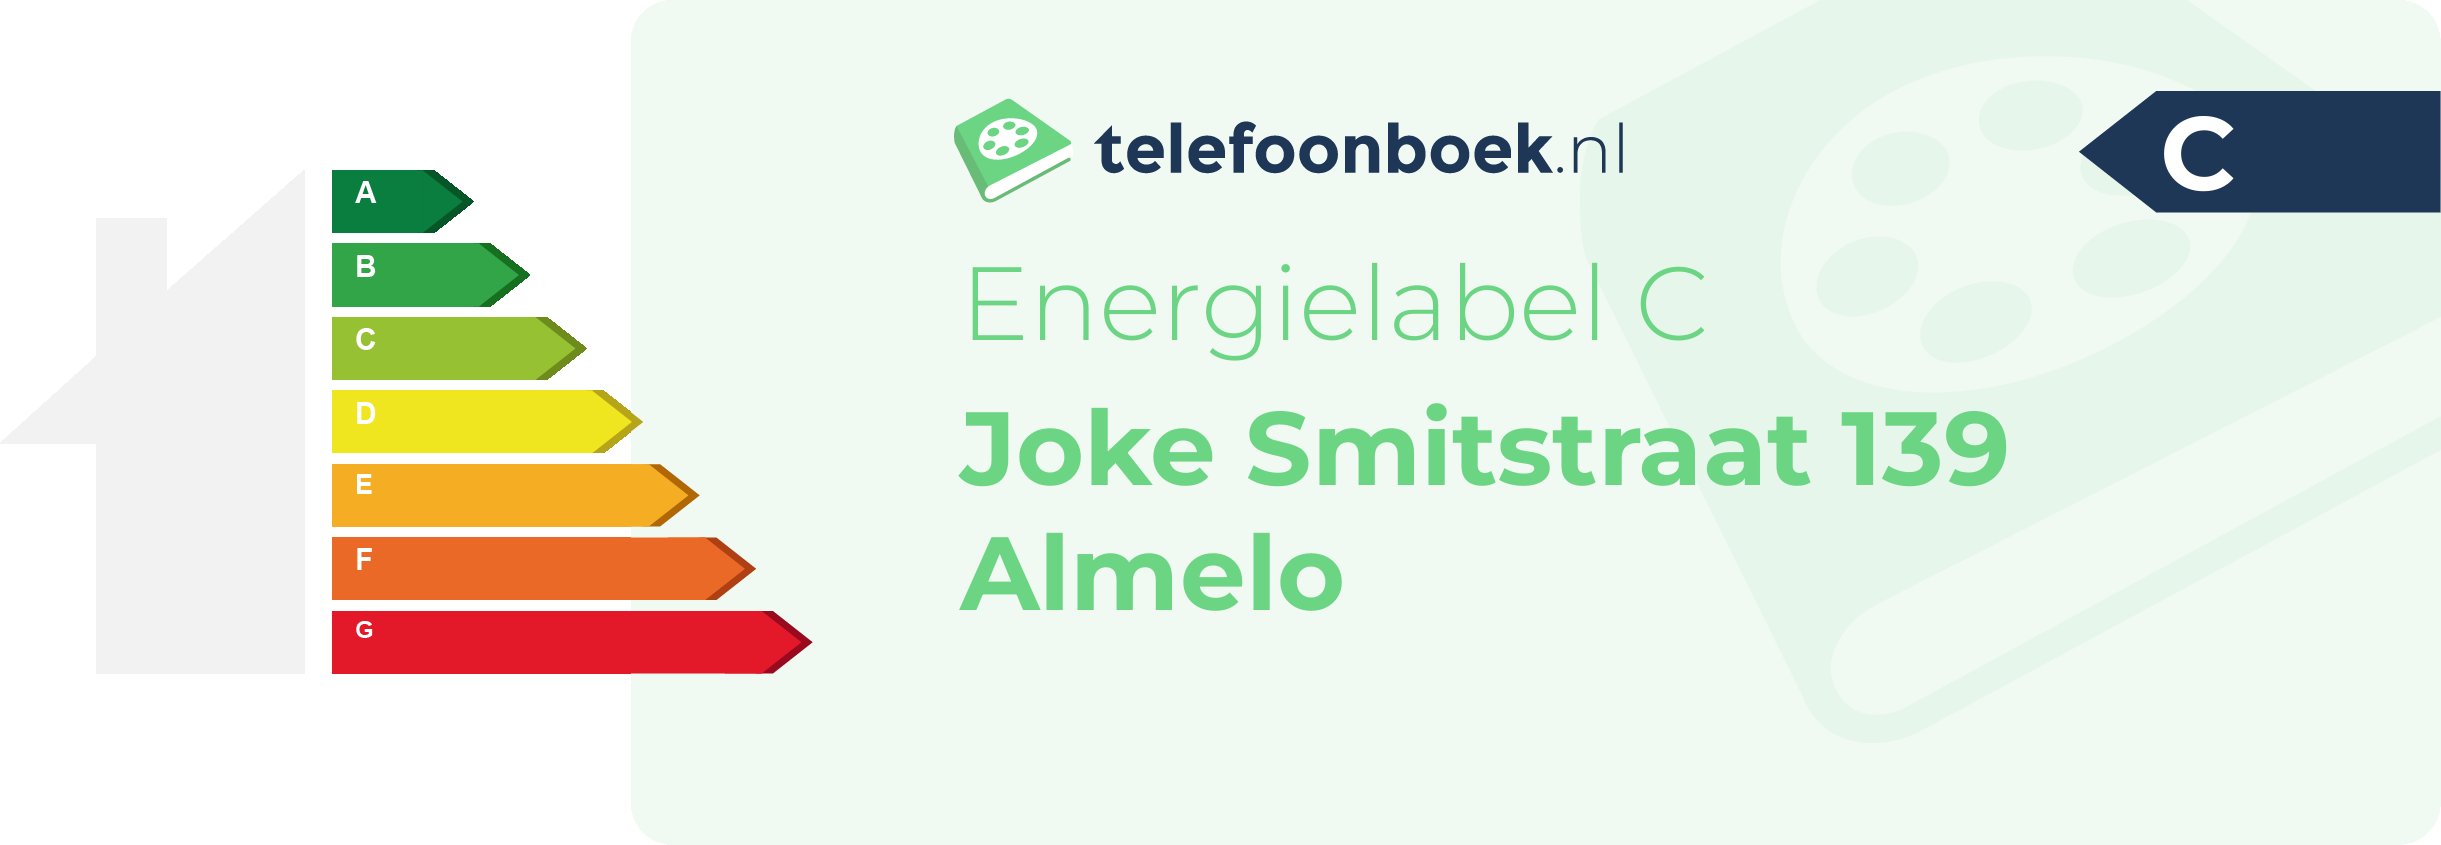 Energielabel Joke Smitstraat 139 Almelo